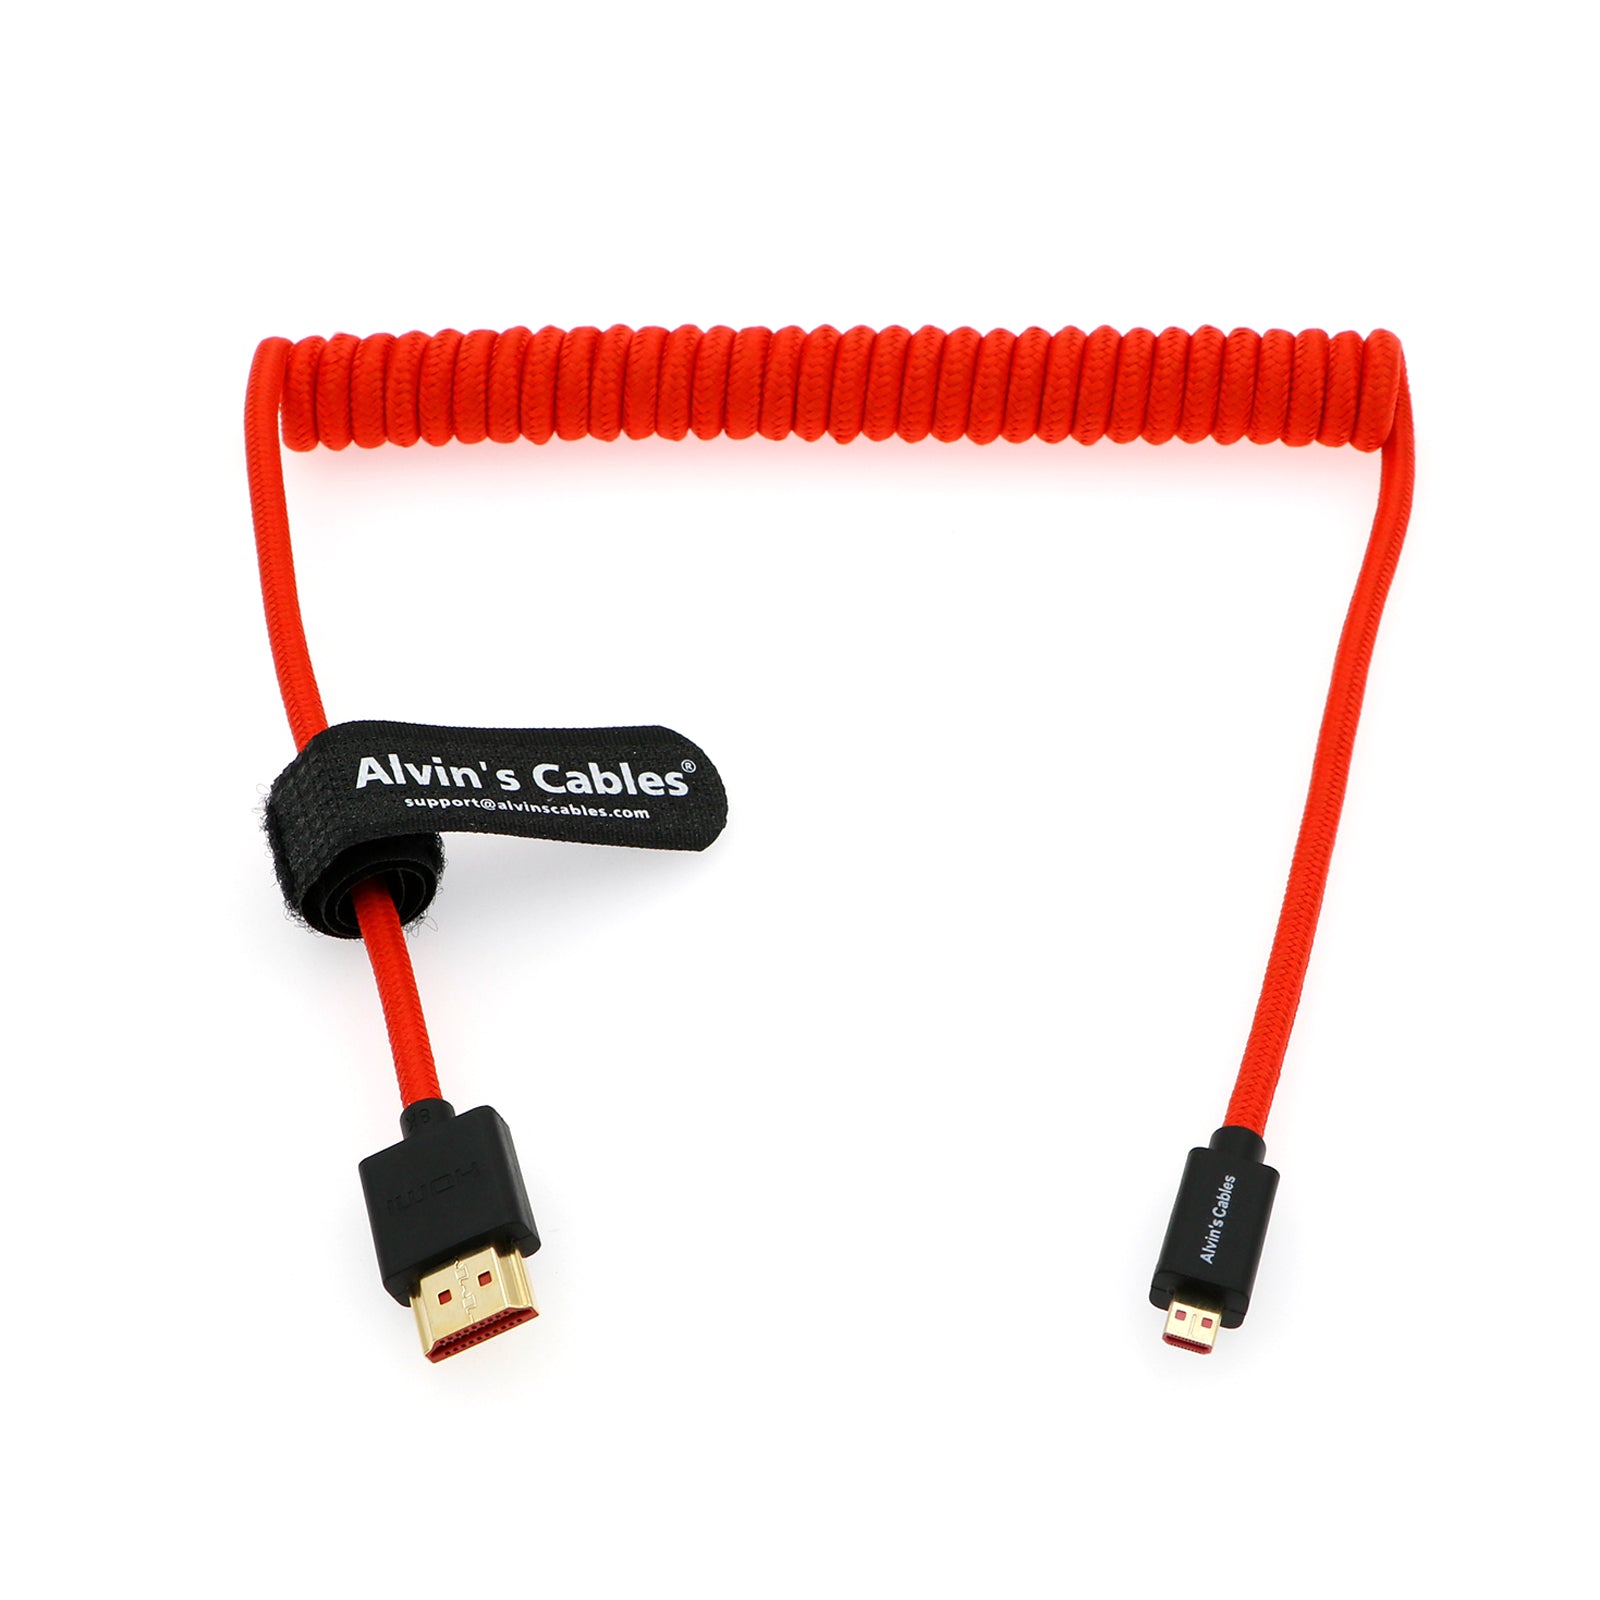 SmallHD Micro-HDMI to Mini-HDMI Cable (3')